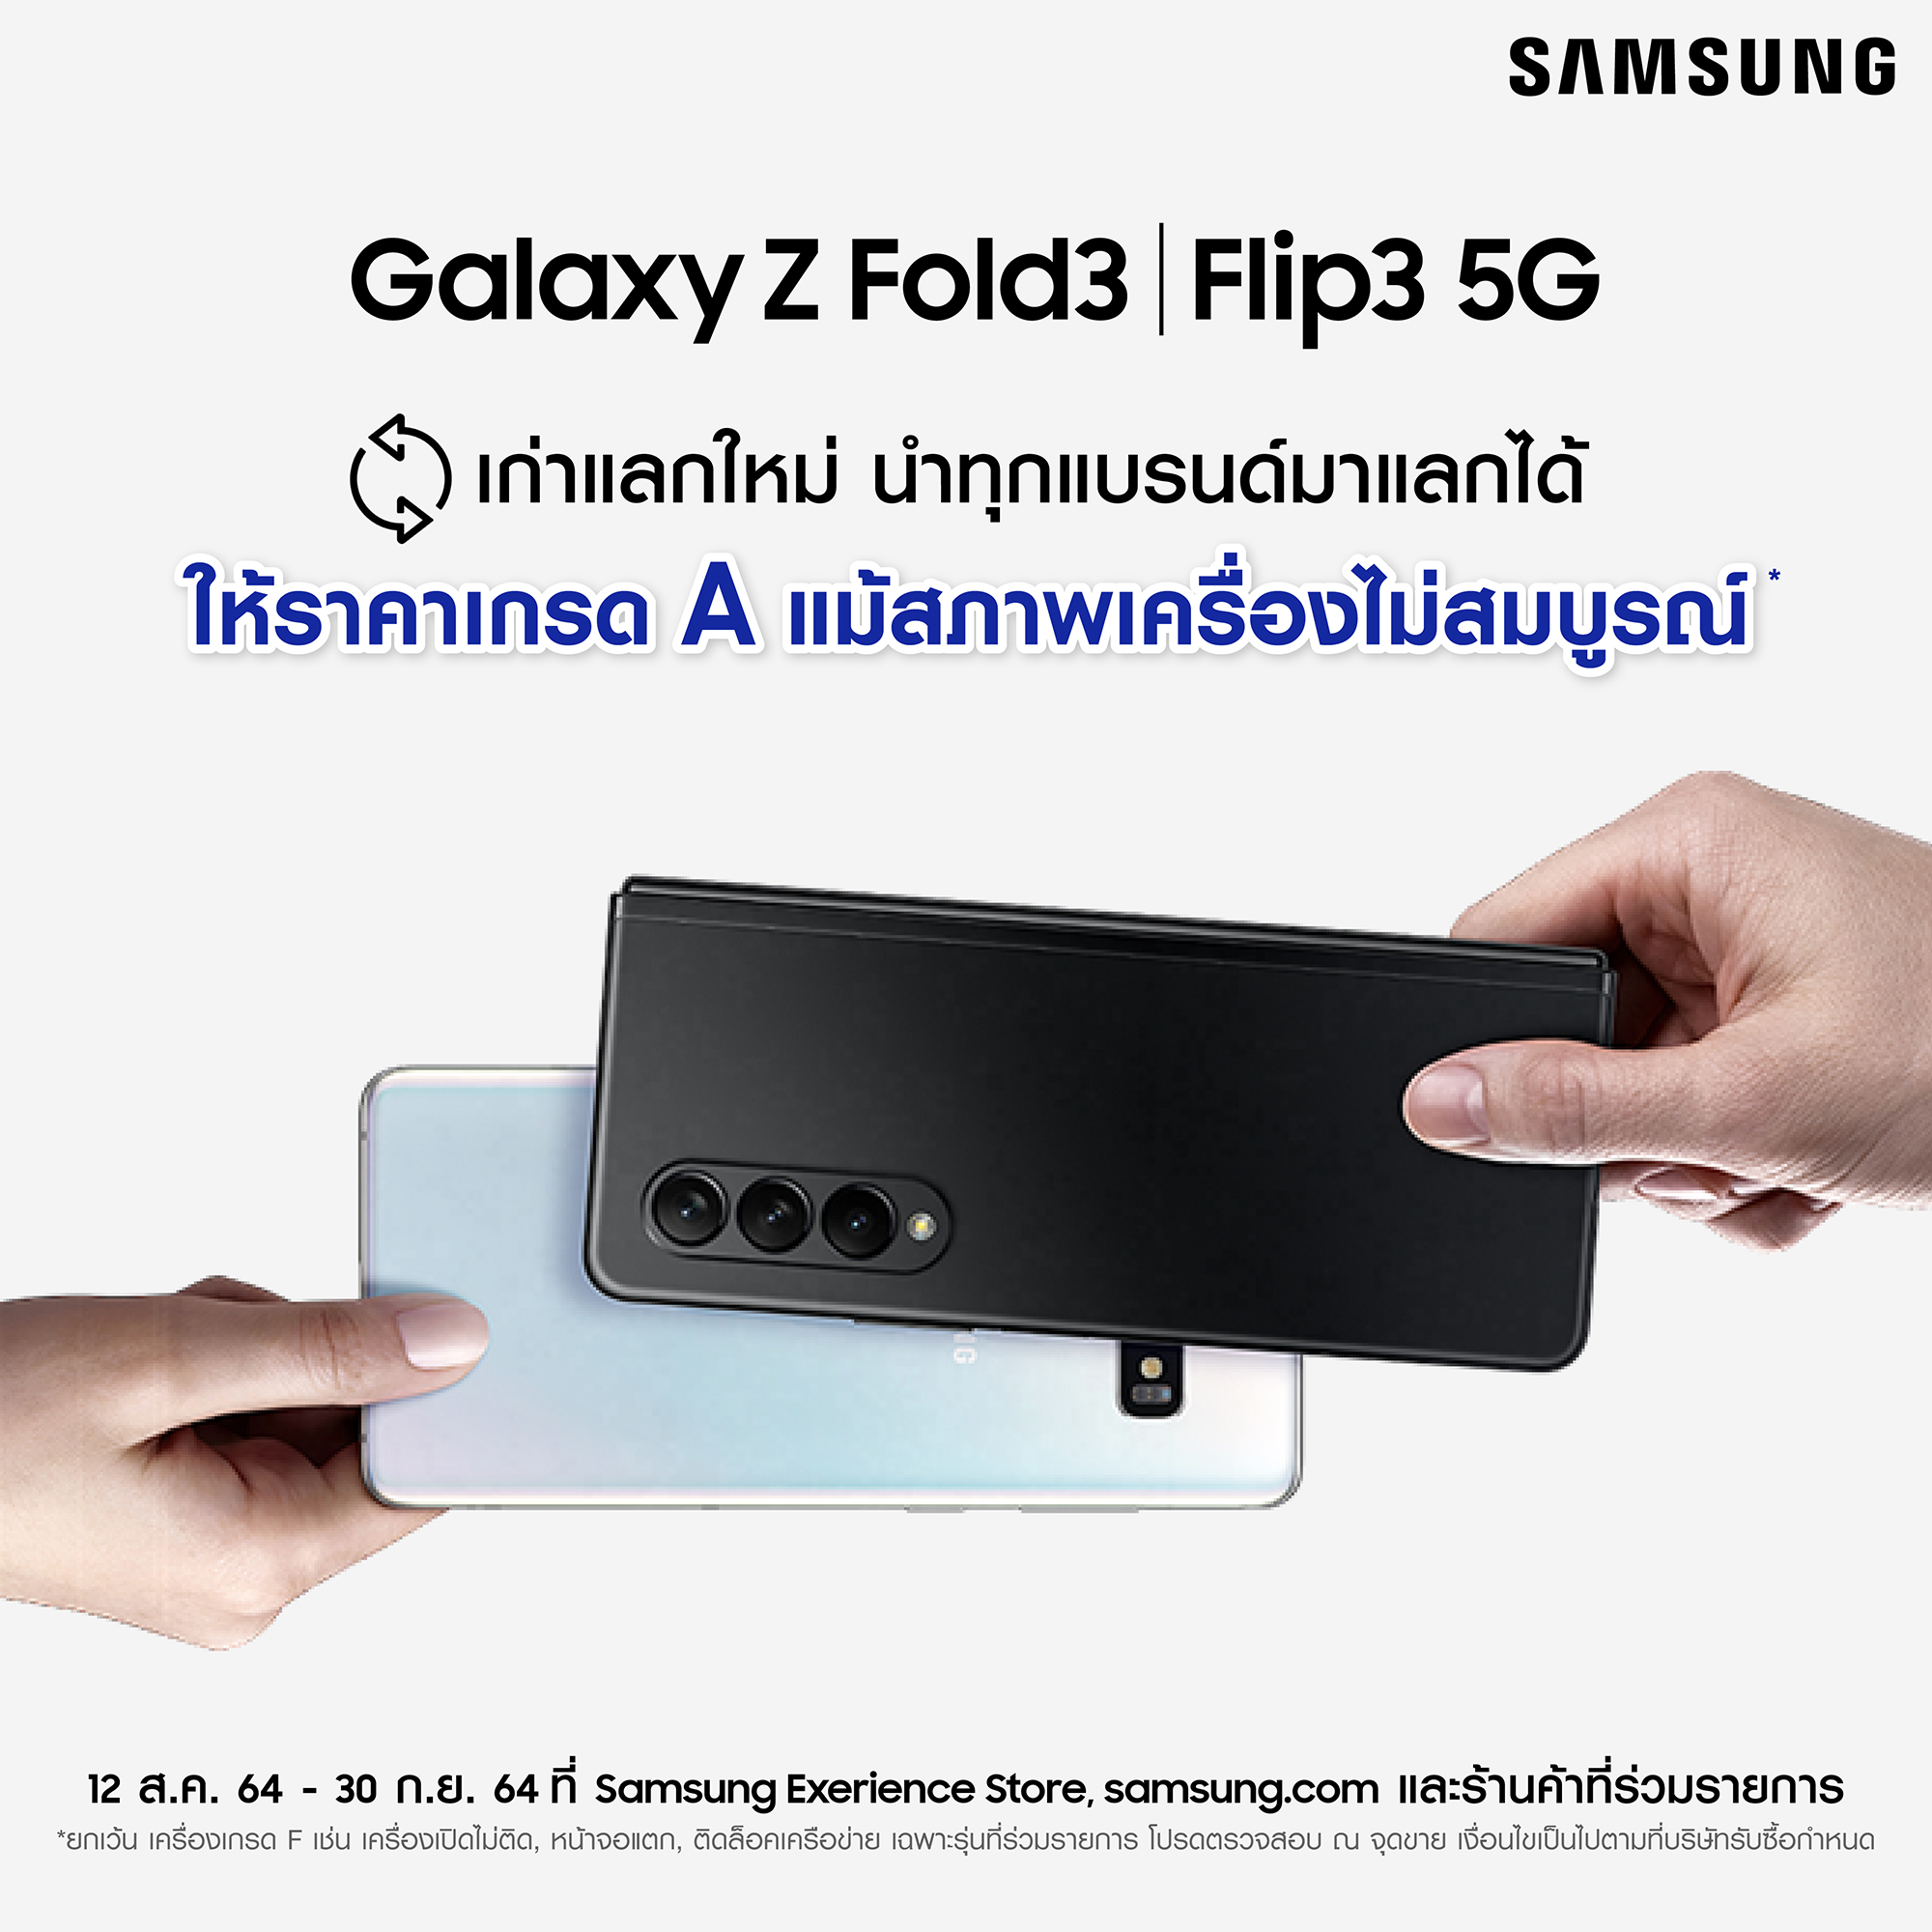 ซัมซุงชวนนำเครื่องเก่าสูงสุด 3 เครื่องมาแลกเป็นส่วนลดในราคาเกรด A เพื่อซื้อ Galaxy Z Fold3 | Flip3 5G